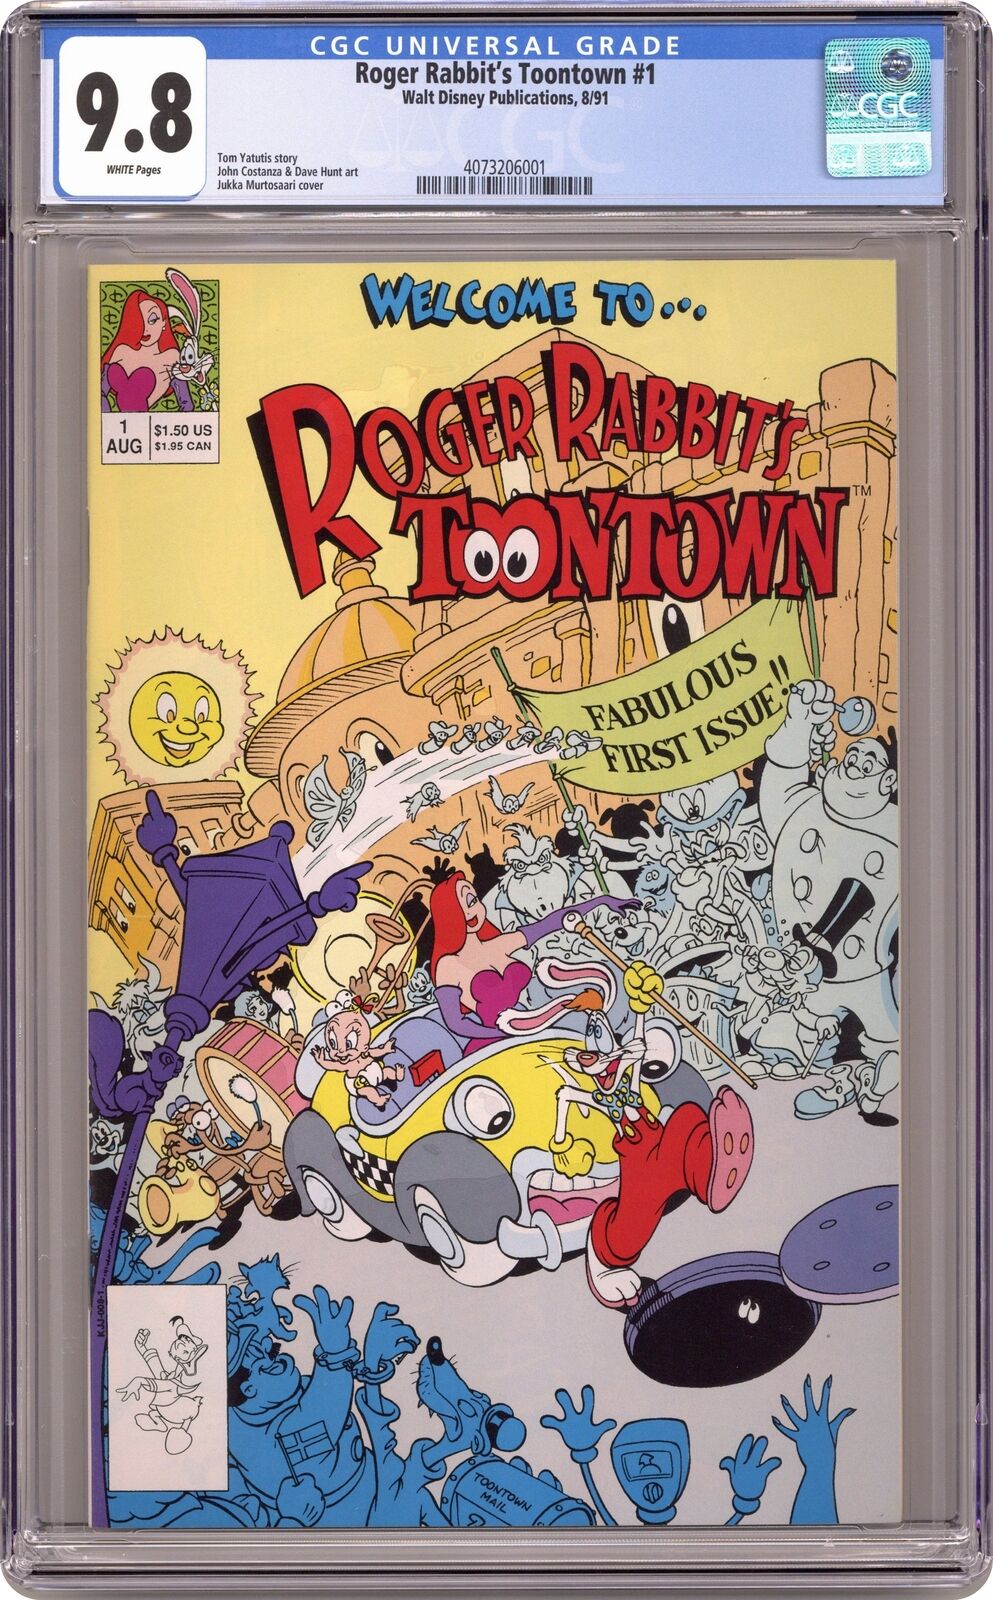 Roger Rabbit's Toontown #1 CGC 9.8 1991 4073206001